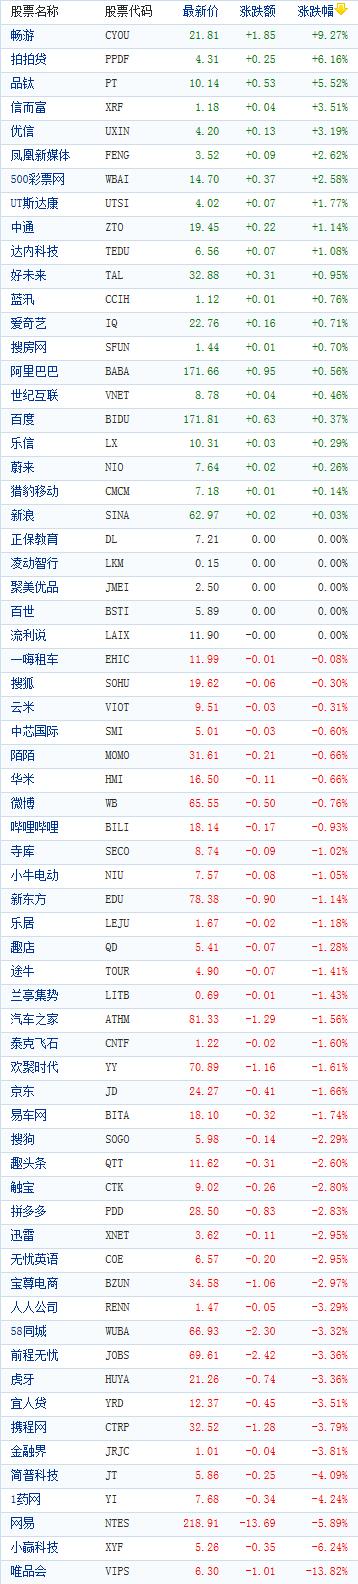 中國概念股週四收盤漲跌互現 暢遊大漲逾9% 財經 第1張